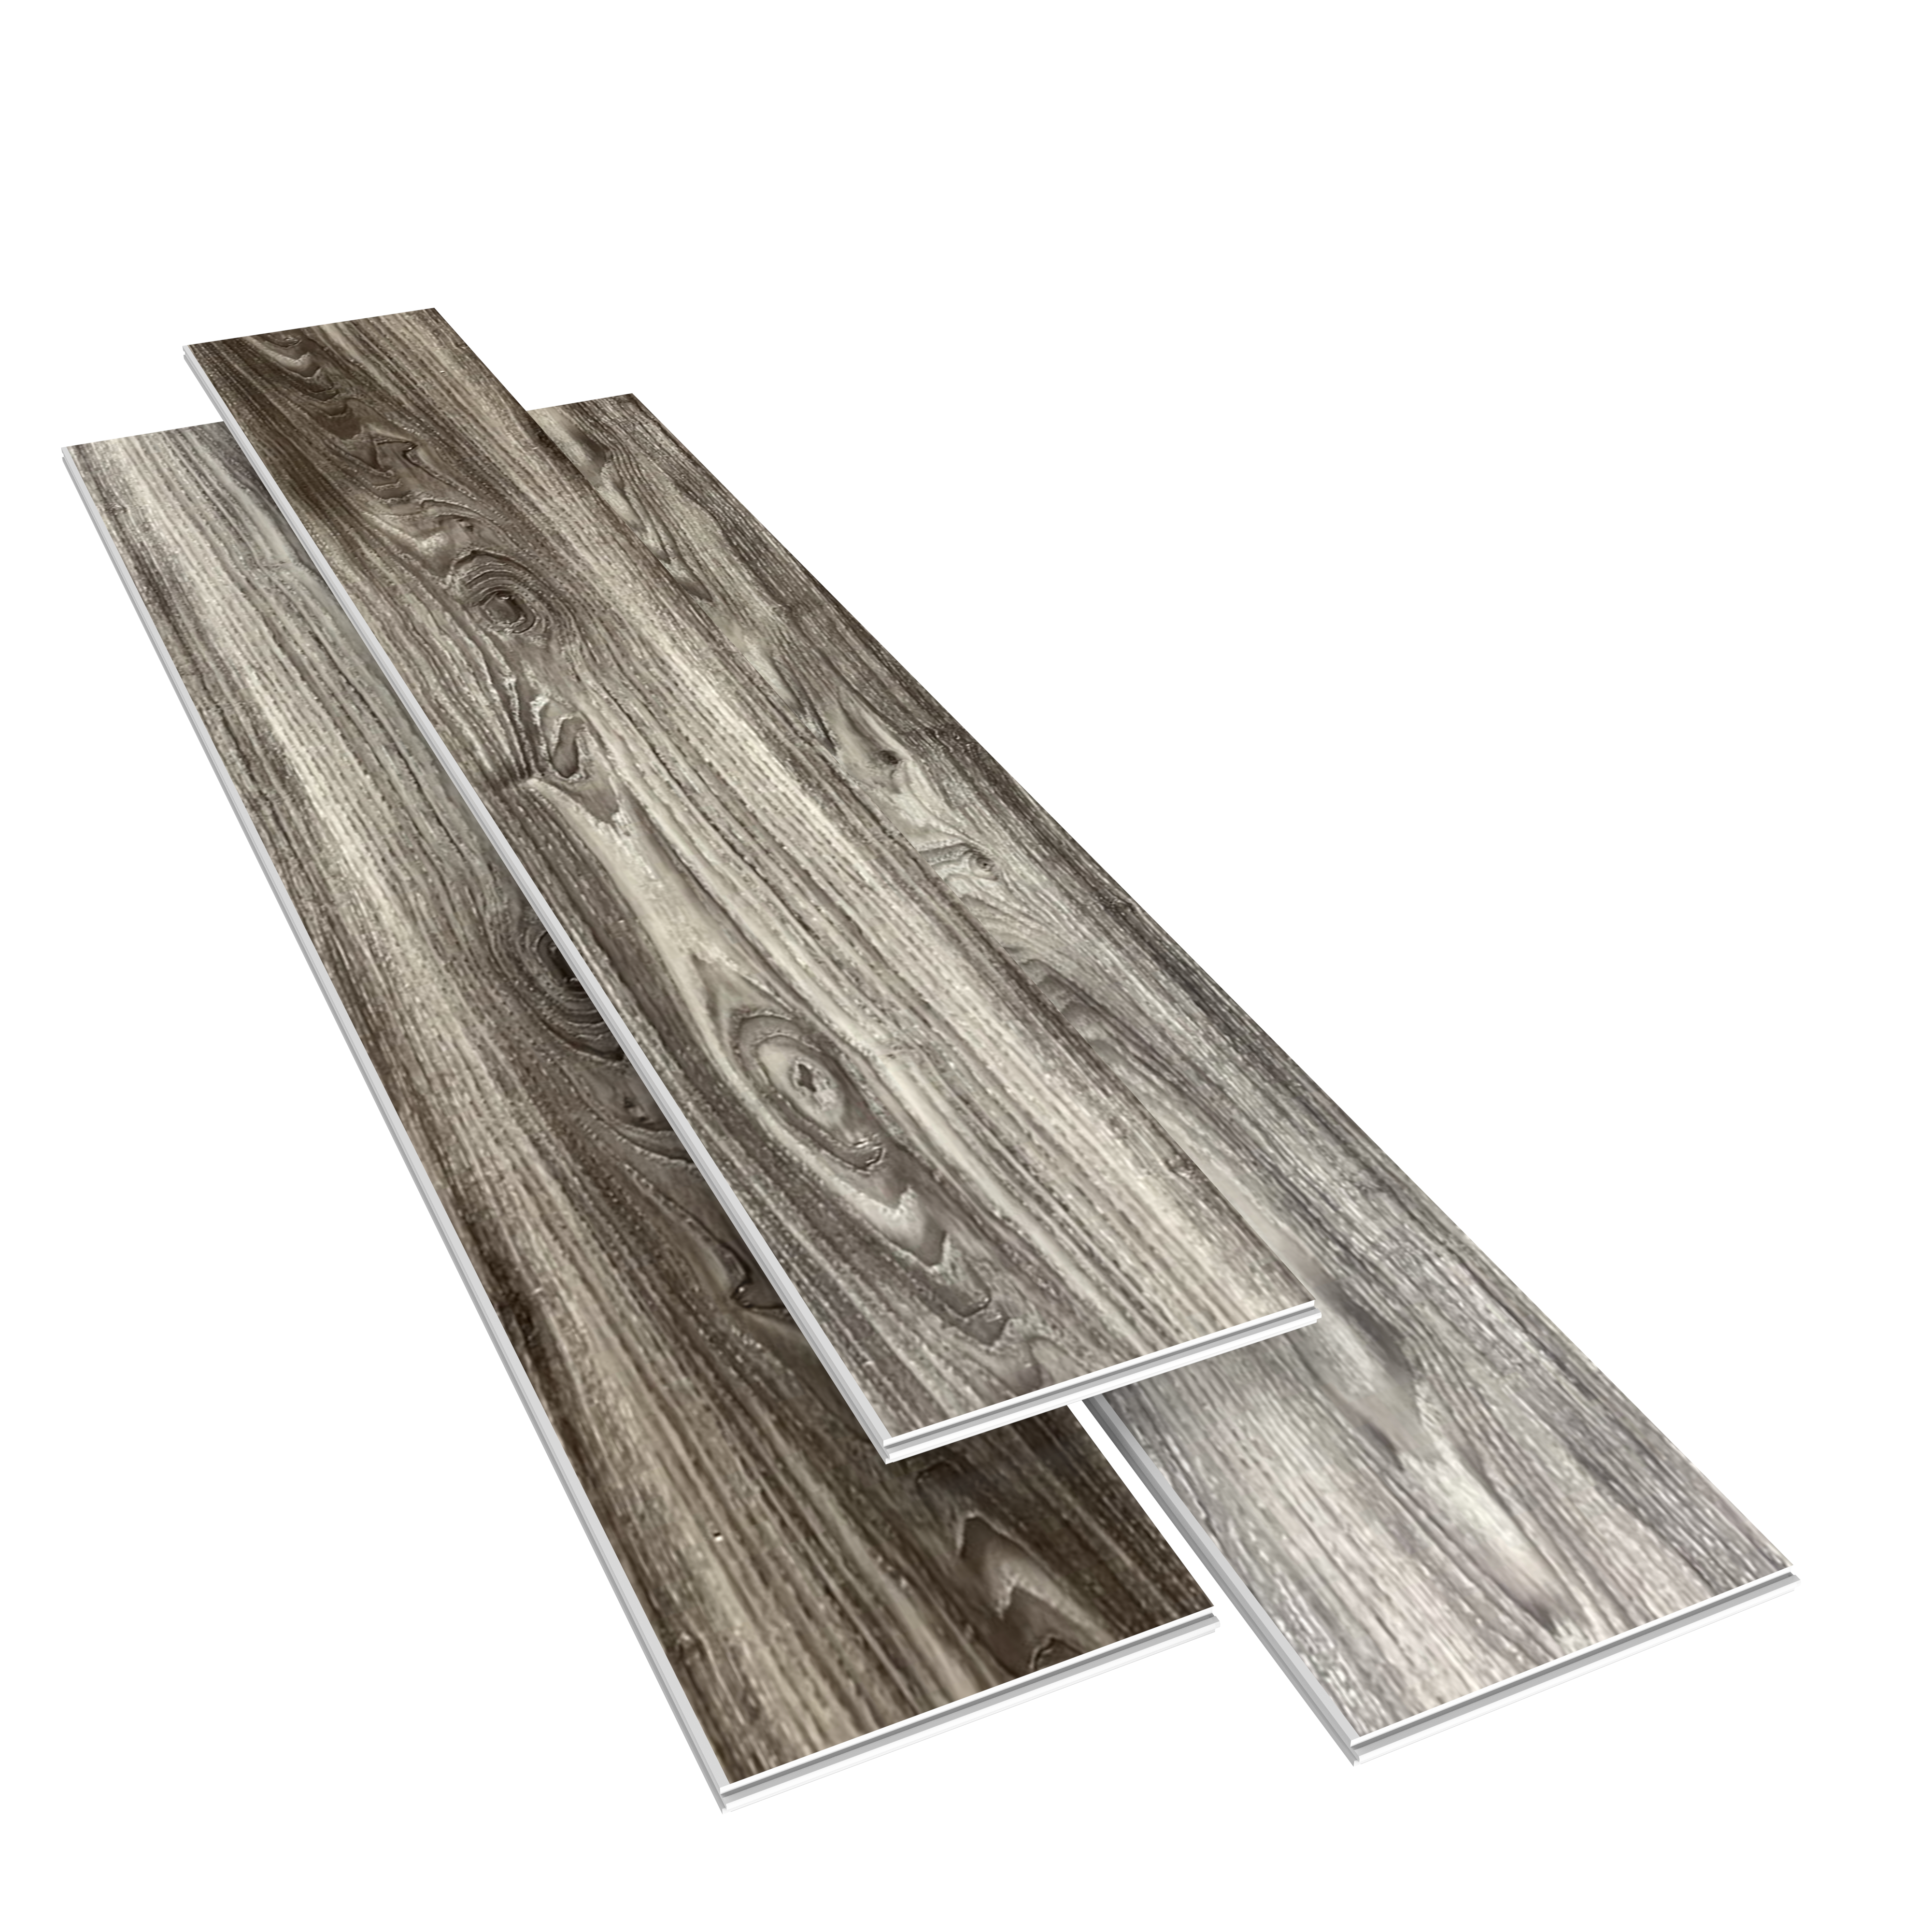 SPC Rigid Core Plank Oxford Flooring, 9" x 60" x 6.5mm, 22 mil Wear Layer